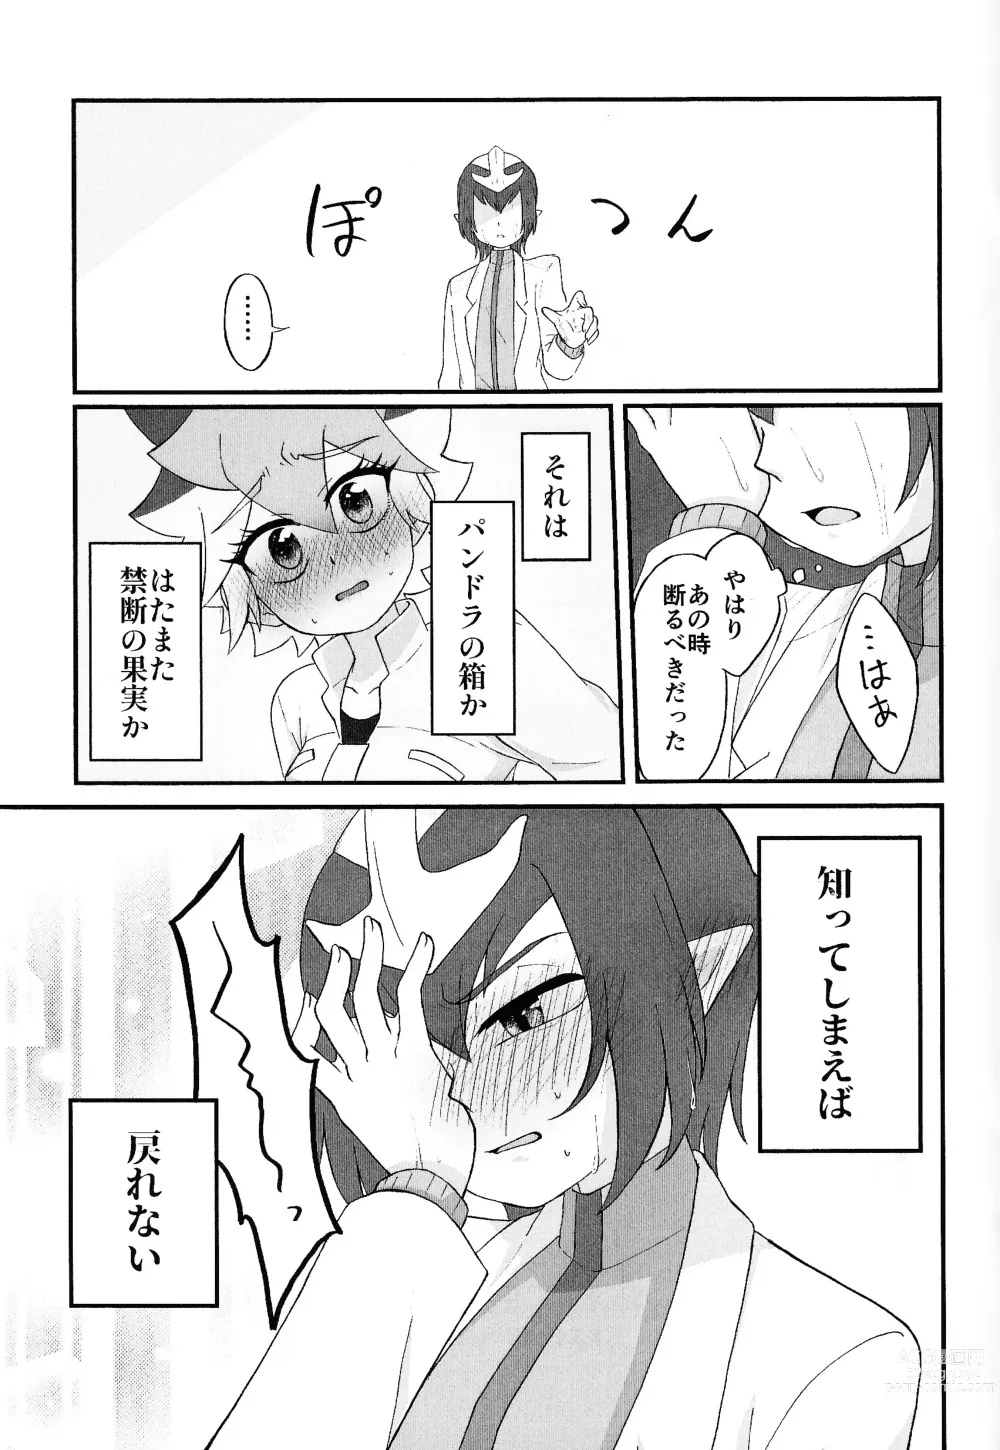 Page 40 of doujinshi Pandoranohako ka kindan no kajitsu ka